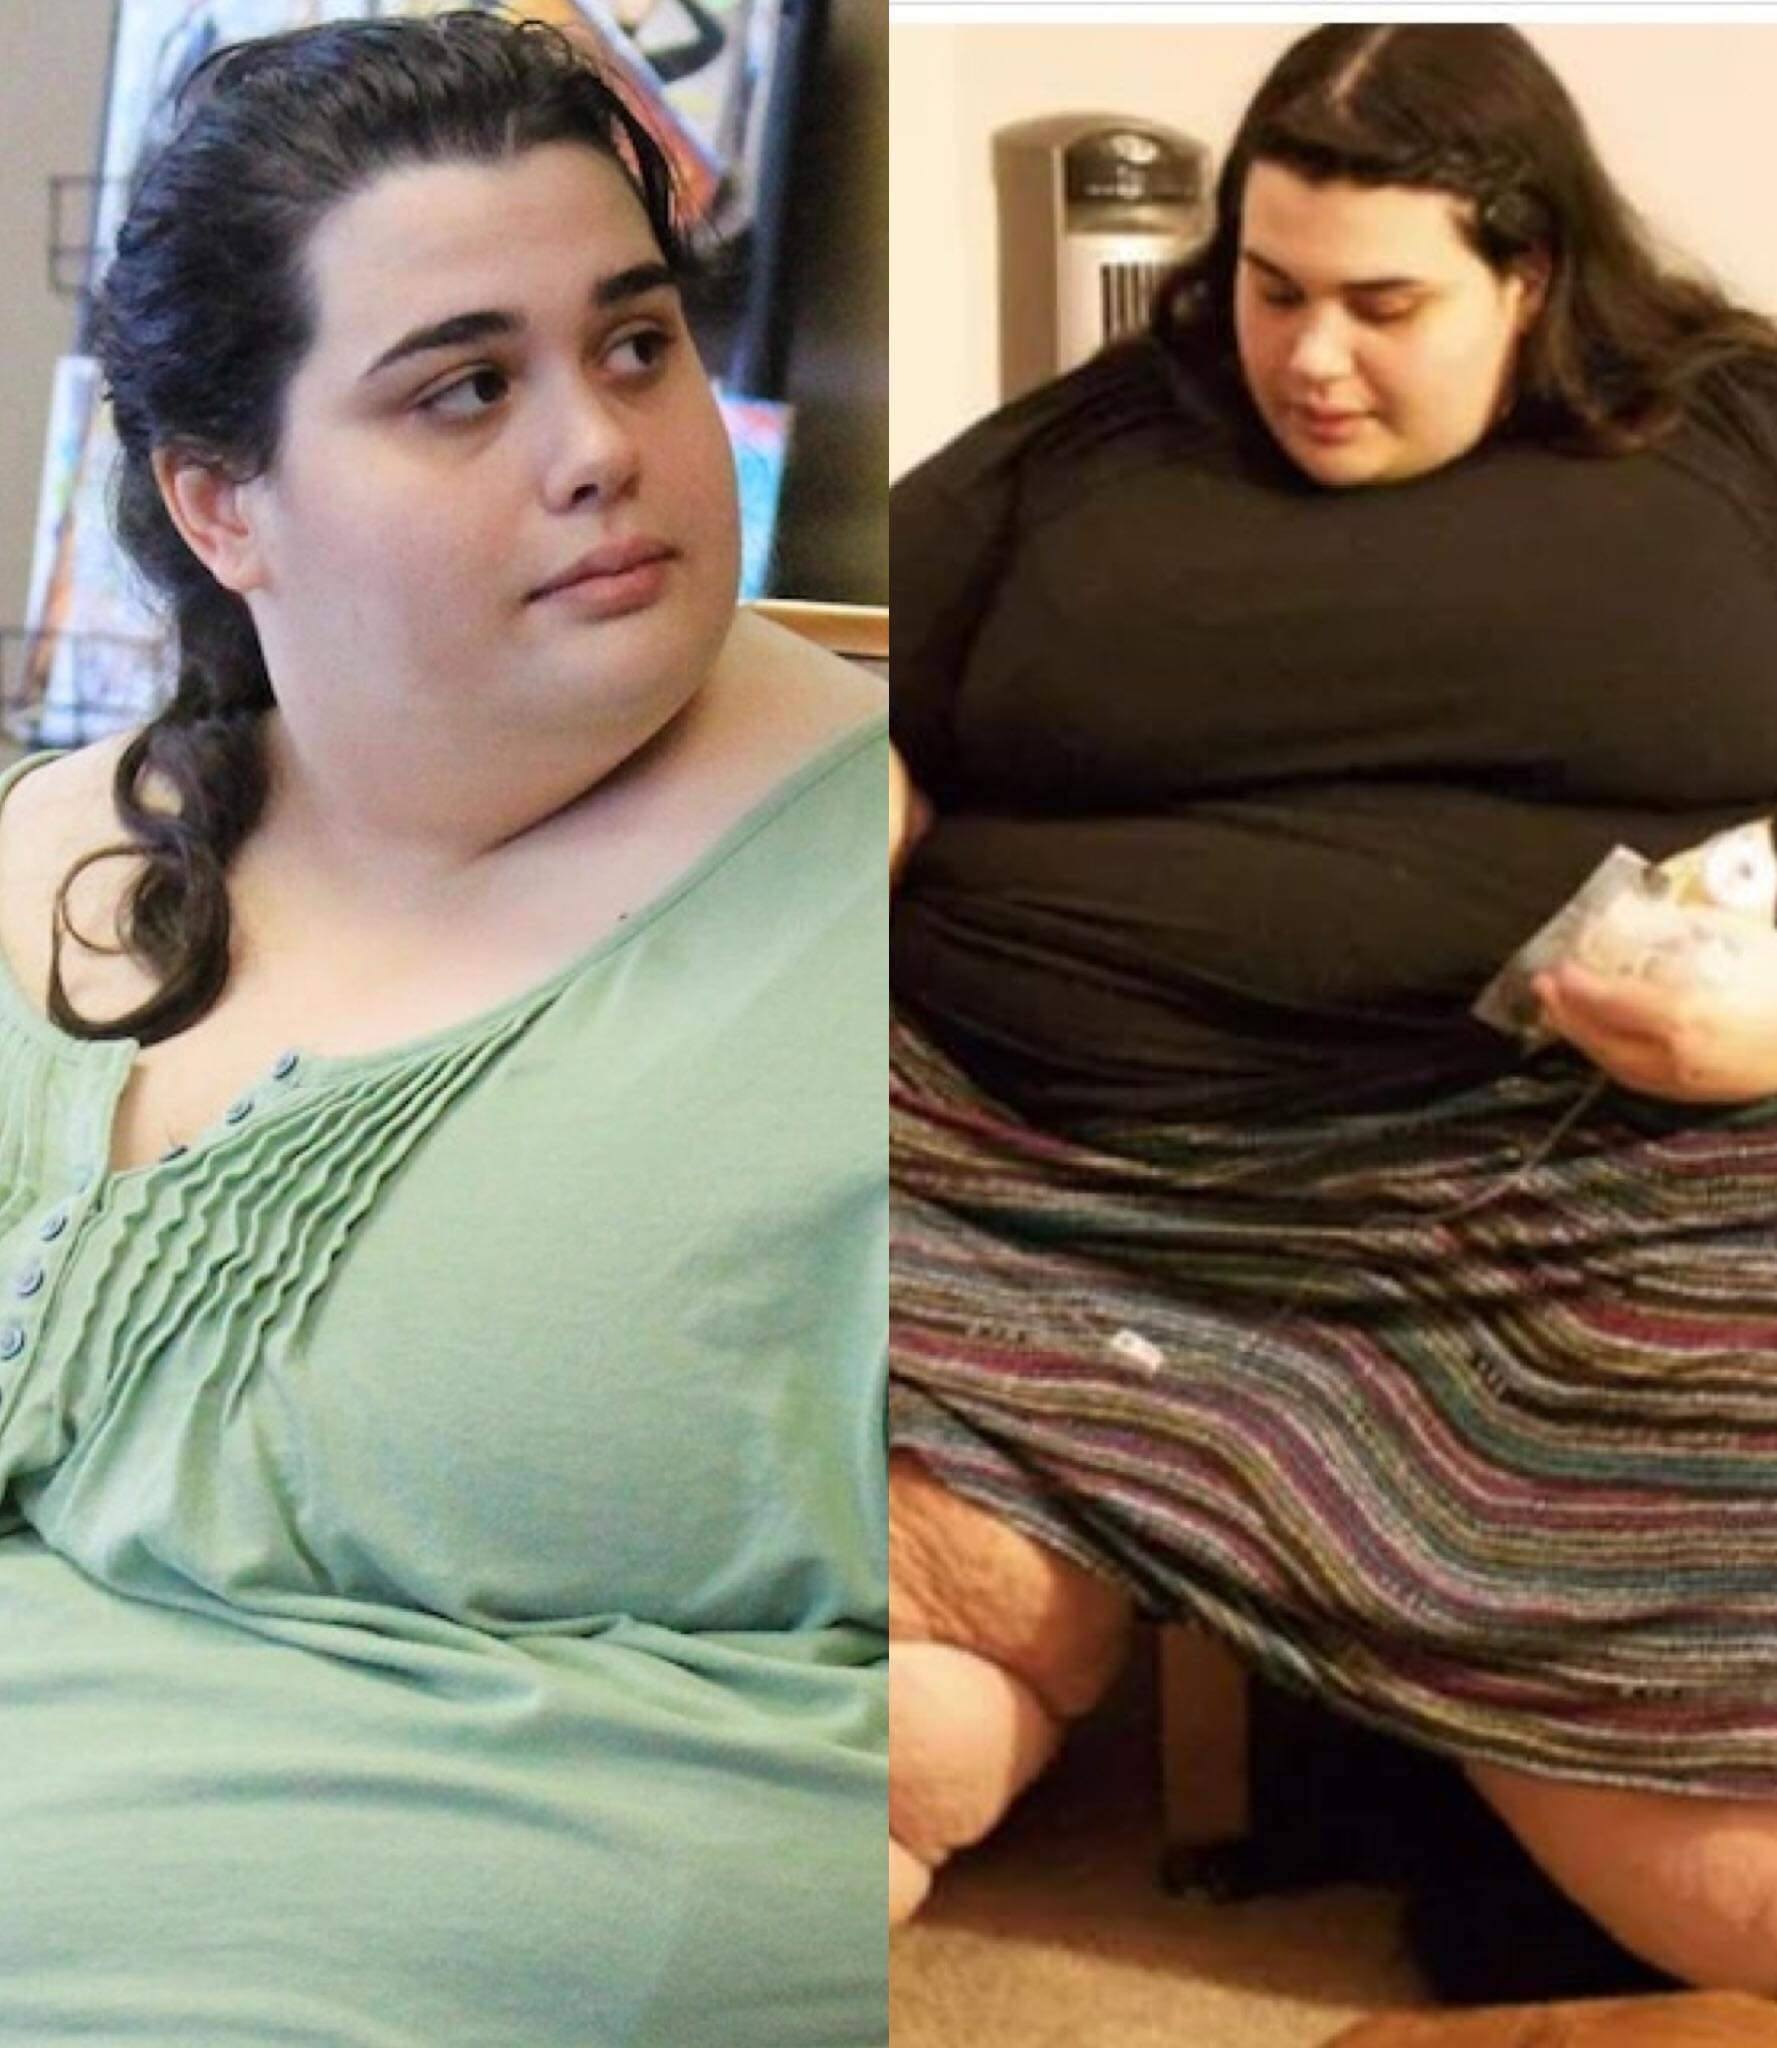 Imala 300 kg, a onda se prijavila na TV emisiju “Moj gojazan život”-pogledajte kako danas izgleda